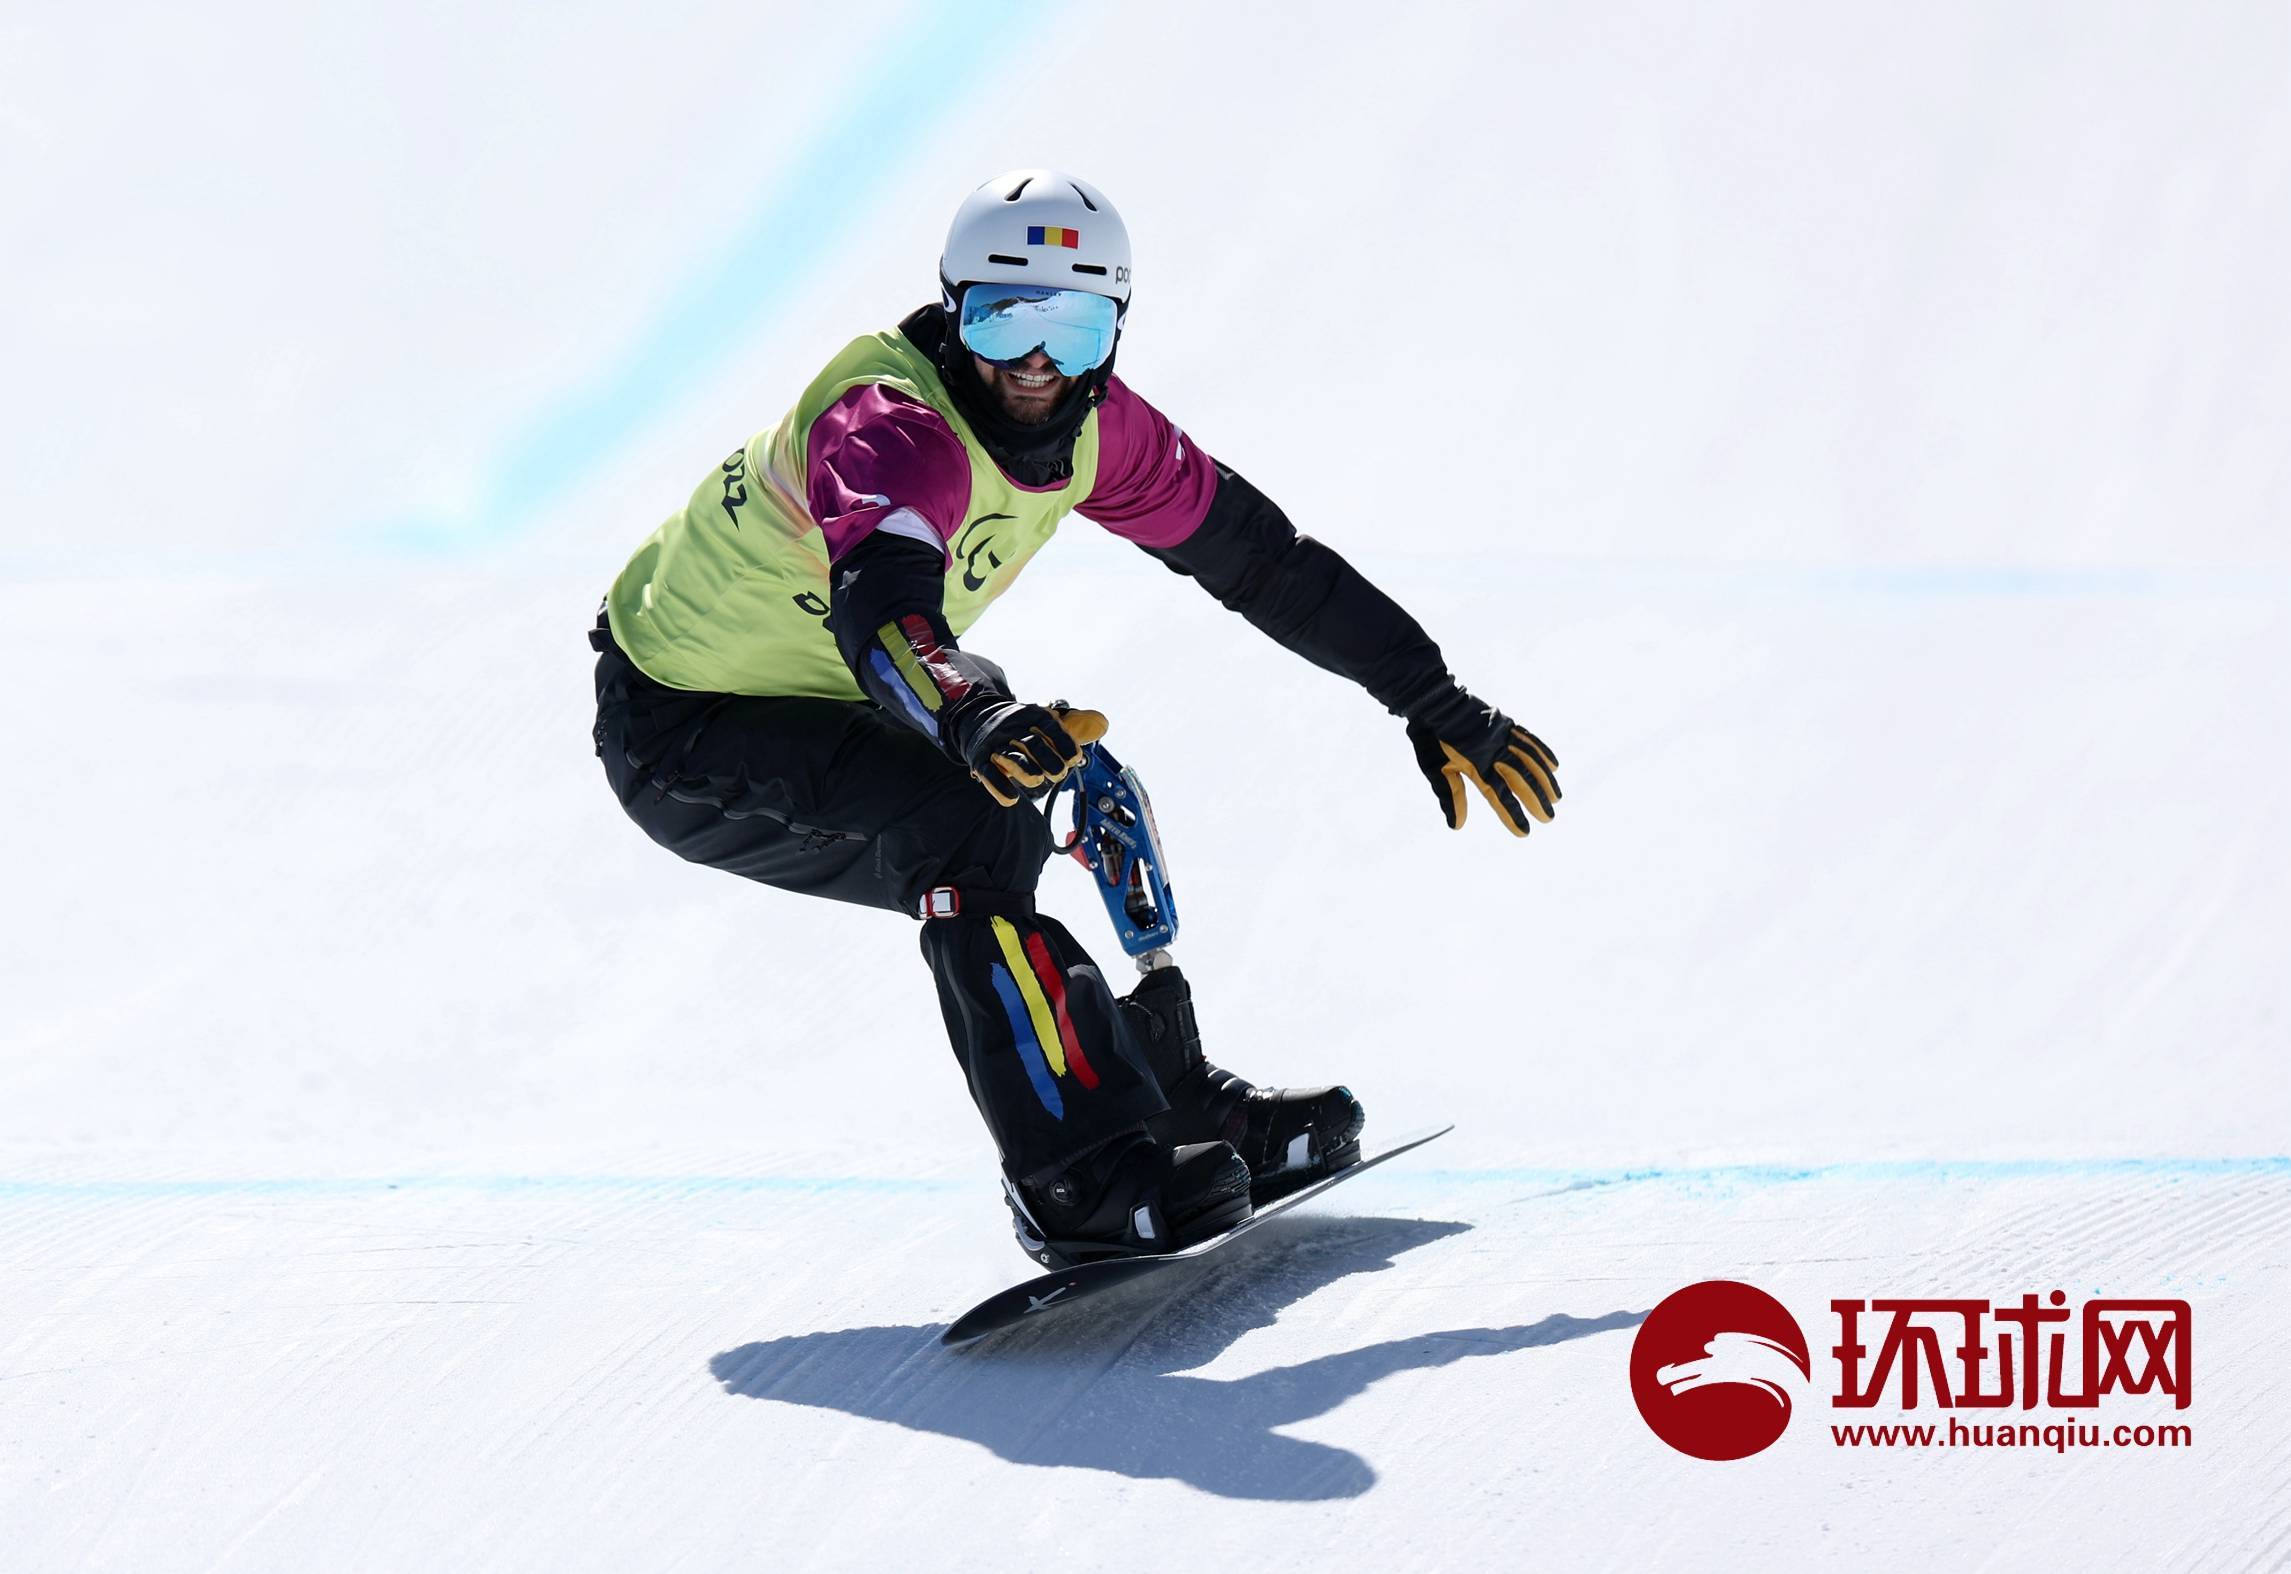 北京冬残奥会残奥单板滑雪比赛项目举行共产生8枚金牌